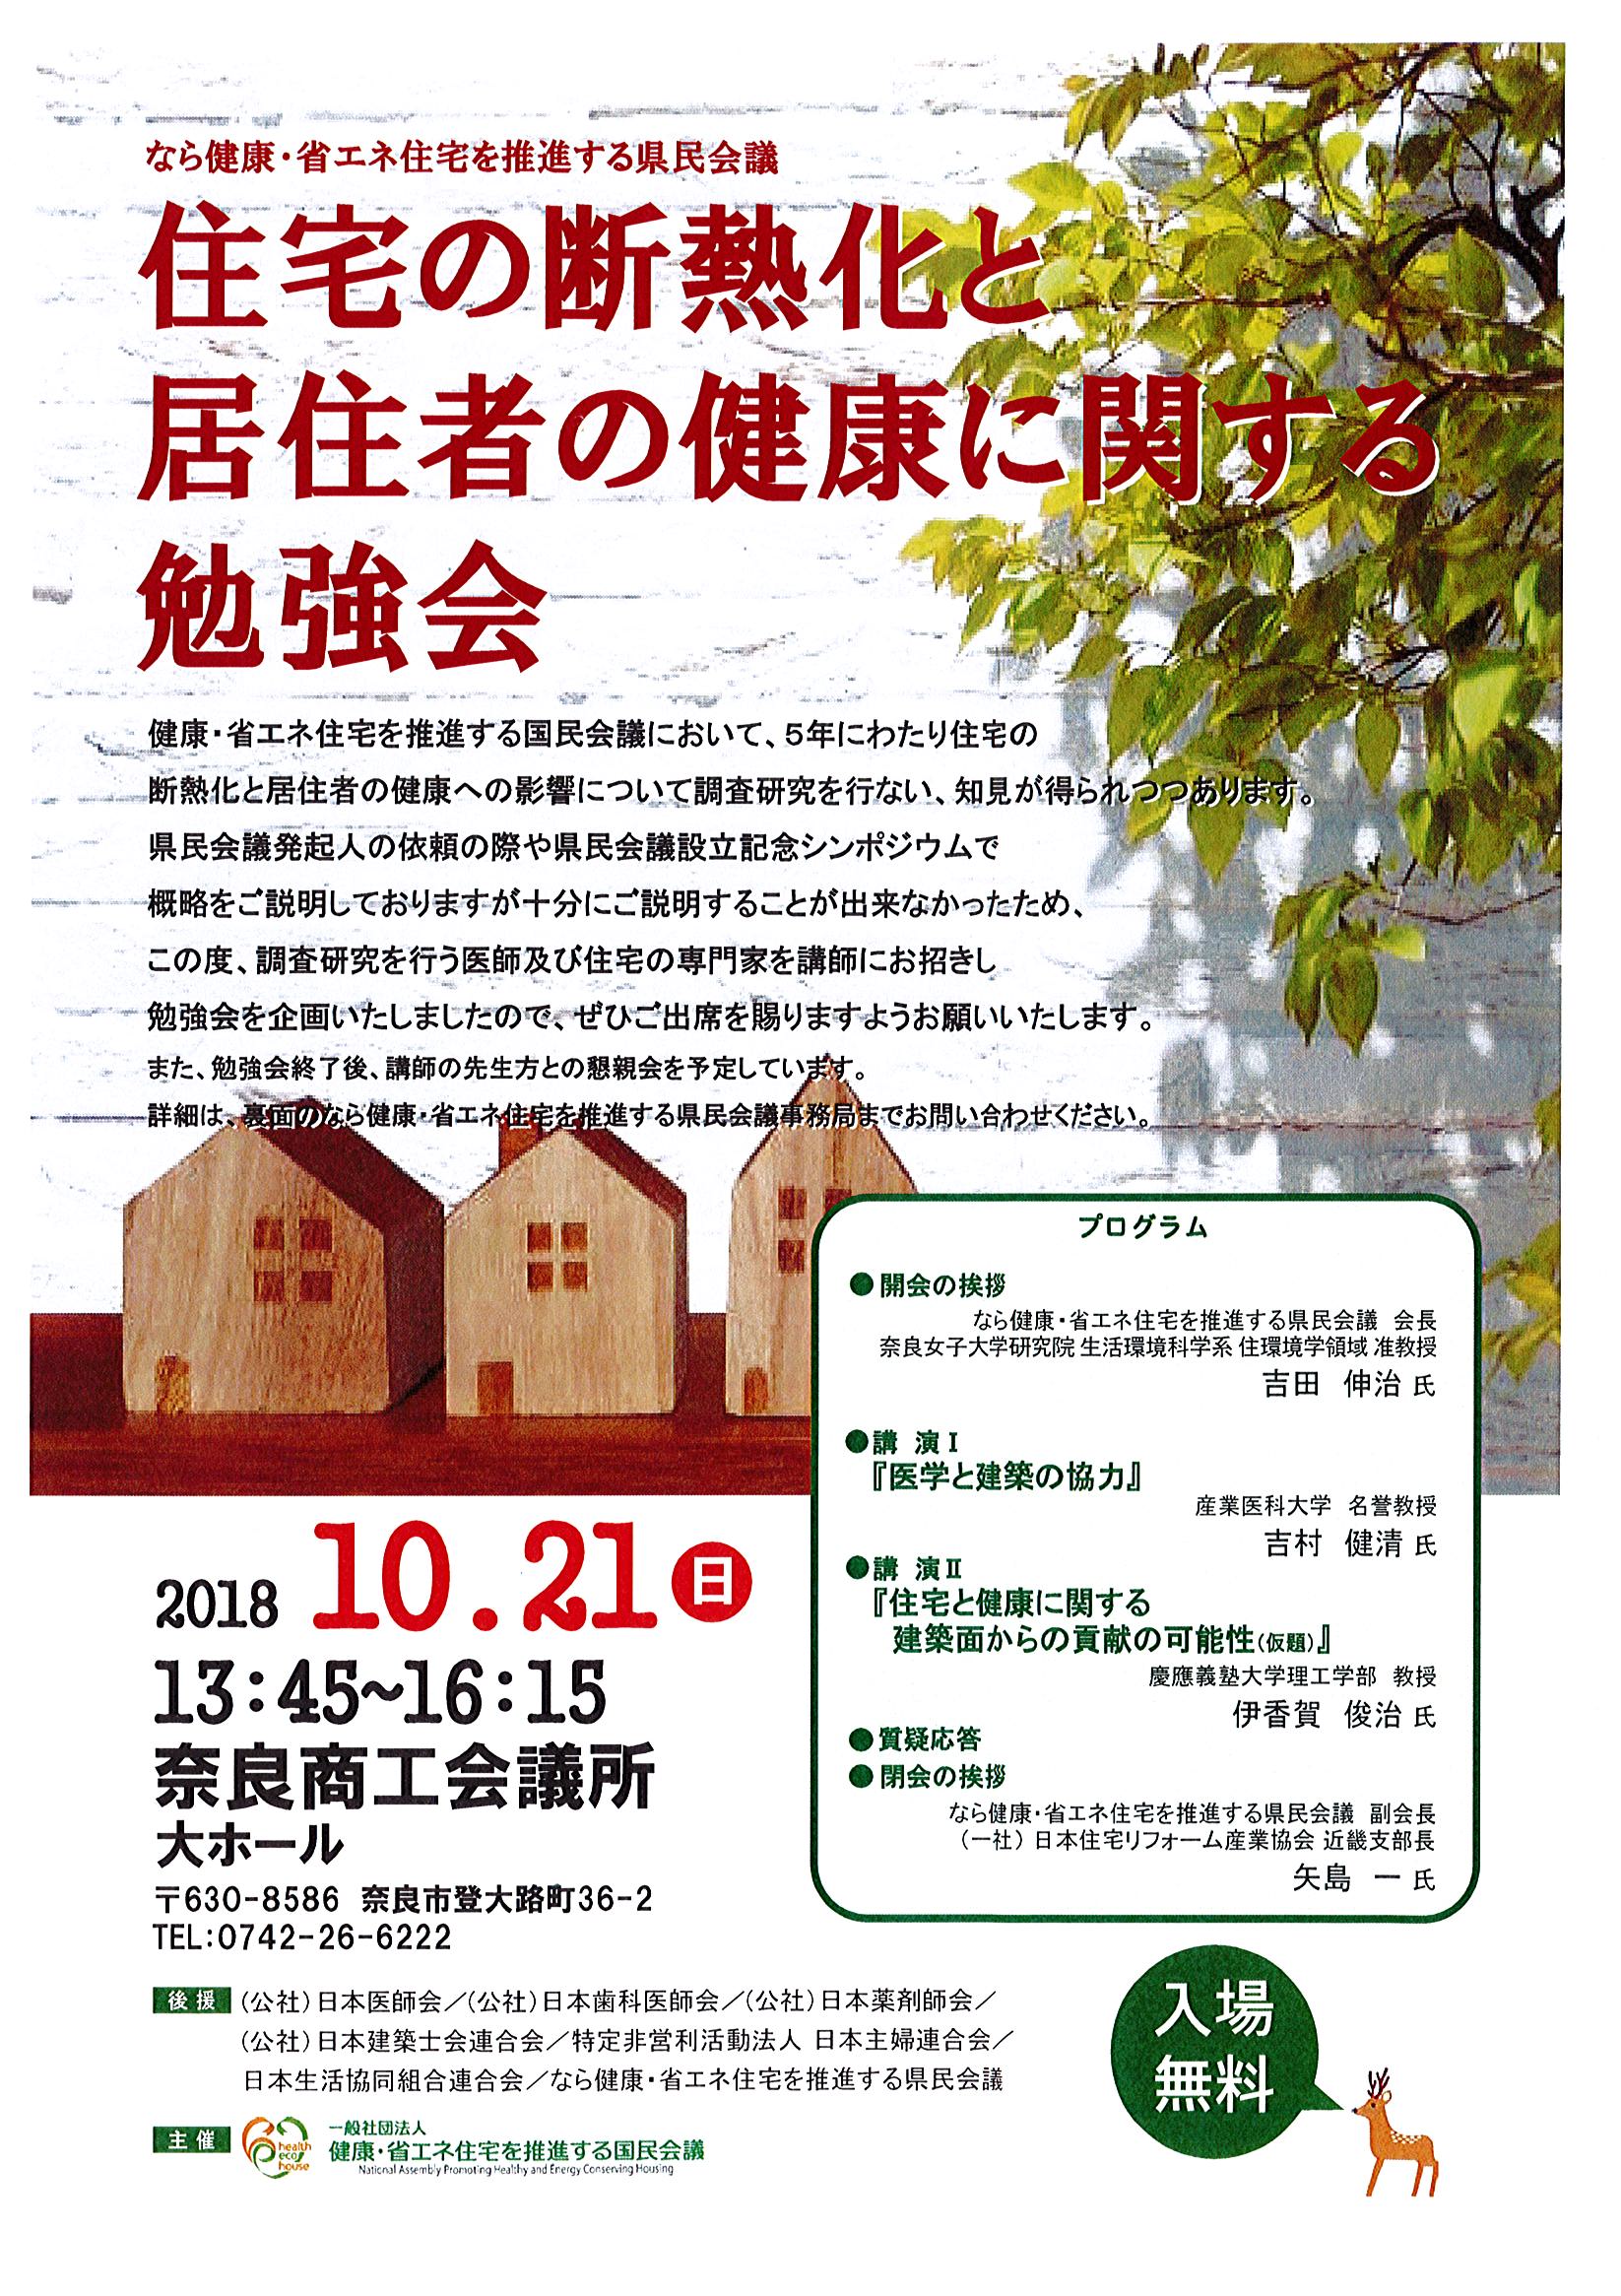 「住宅の断熱化と居住者の健康に関する勉強会」in奈良商工会議所